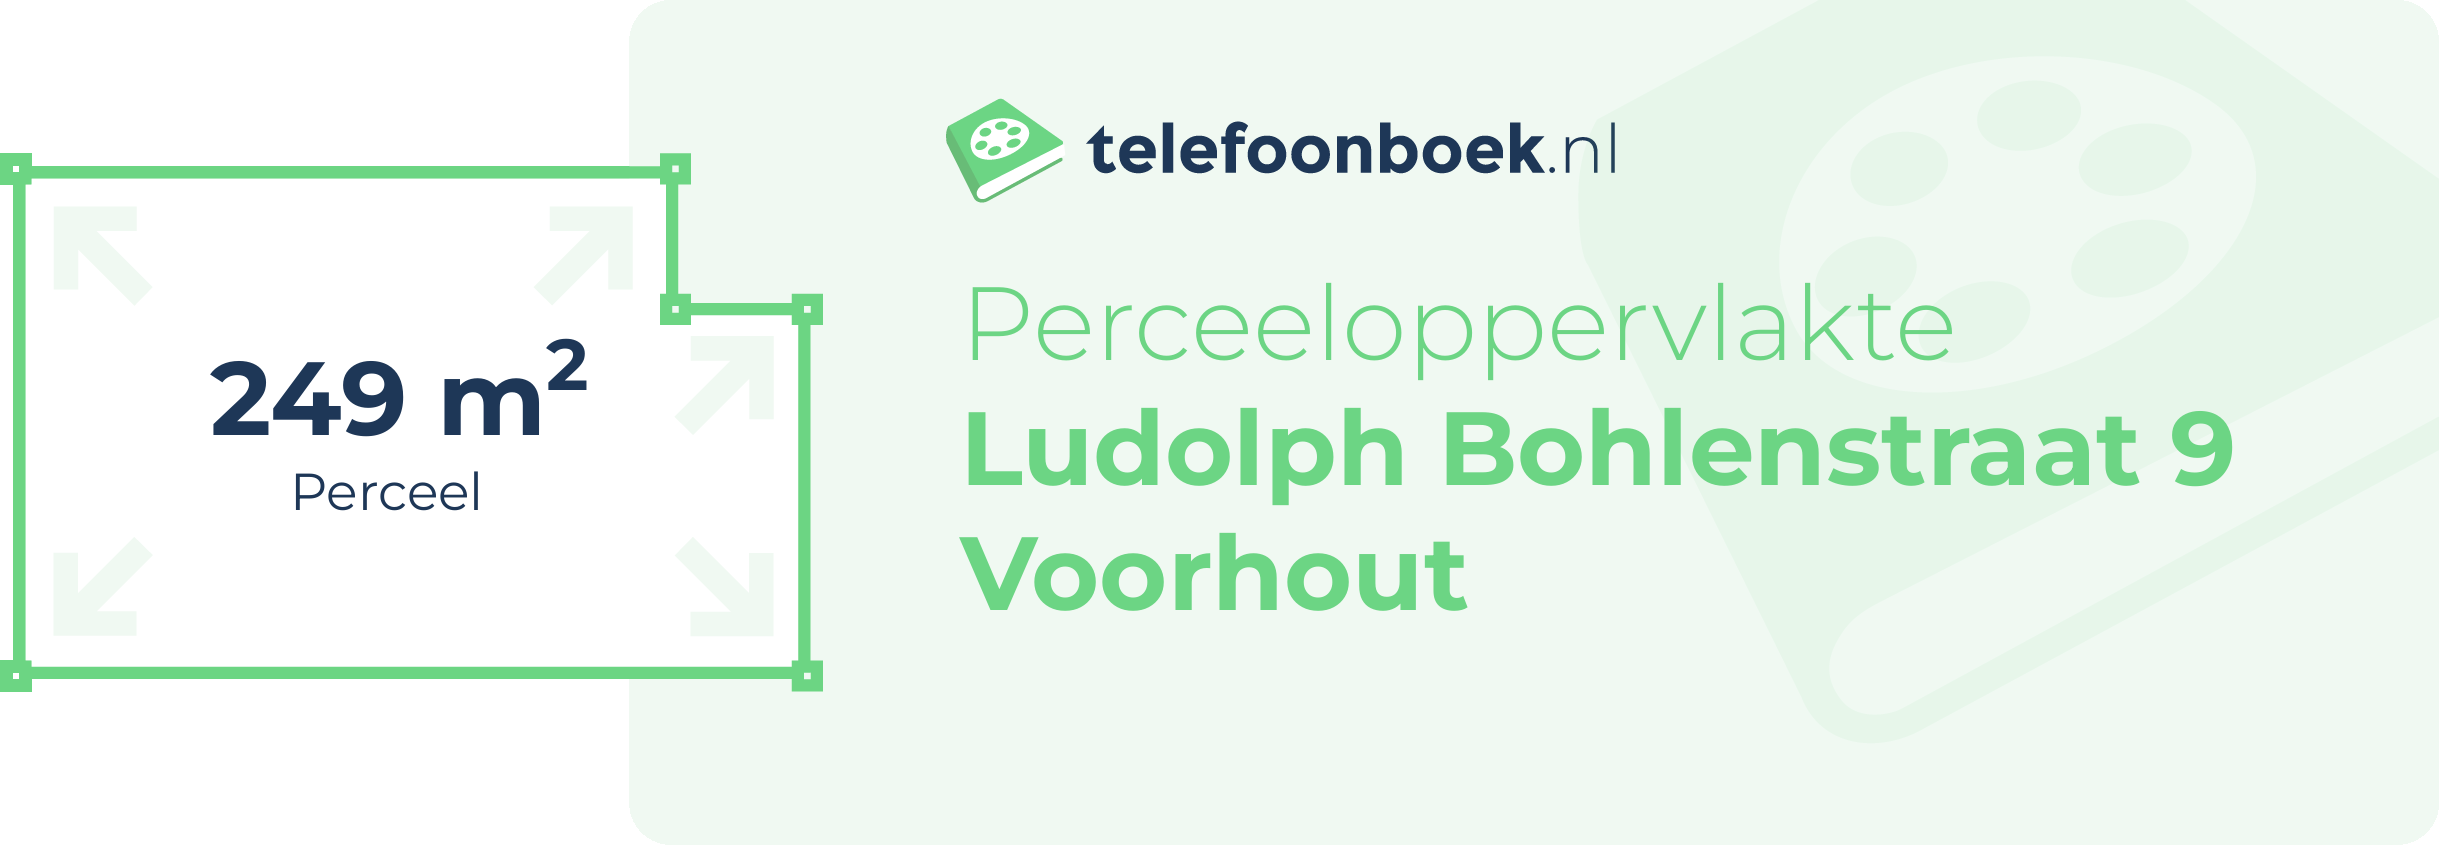 Perceeloppervlakte Ludolph Bohlenstraat 9 Voorhout